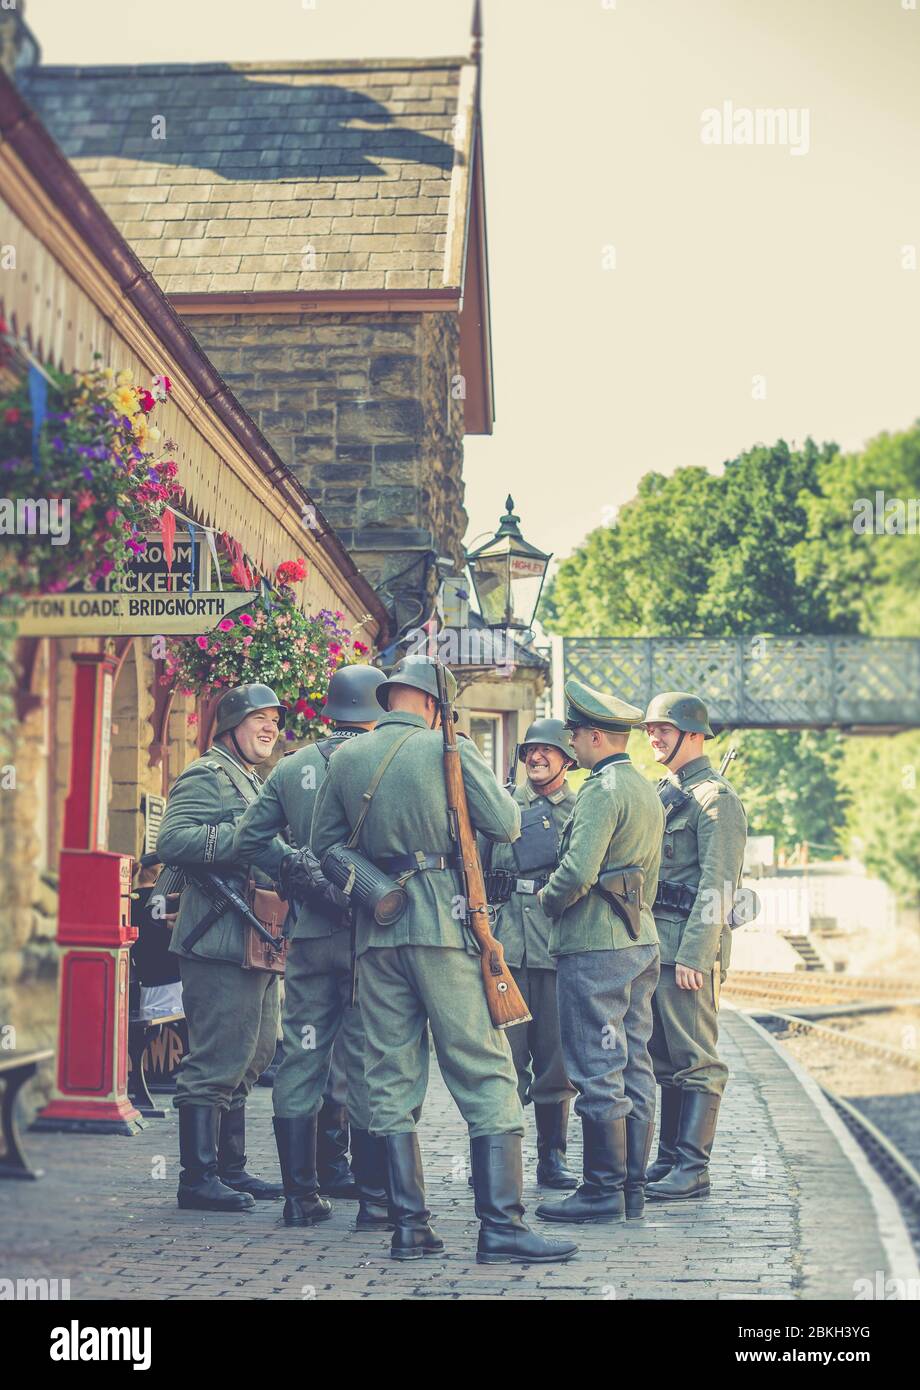 Severn Valley Railway 1940 Wartime WW2 evento estivo, Regno Unito. Soldati tedeschi nazisti in servizio, occupando stazione ferroviaria d'epoca. Foto Stock